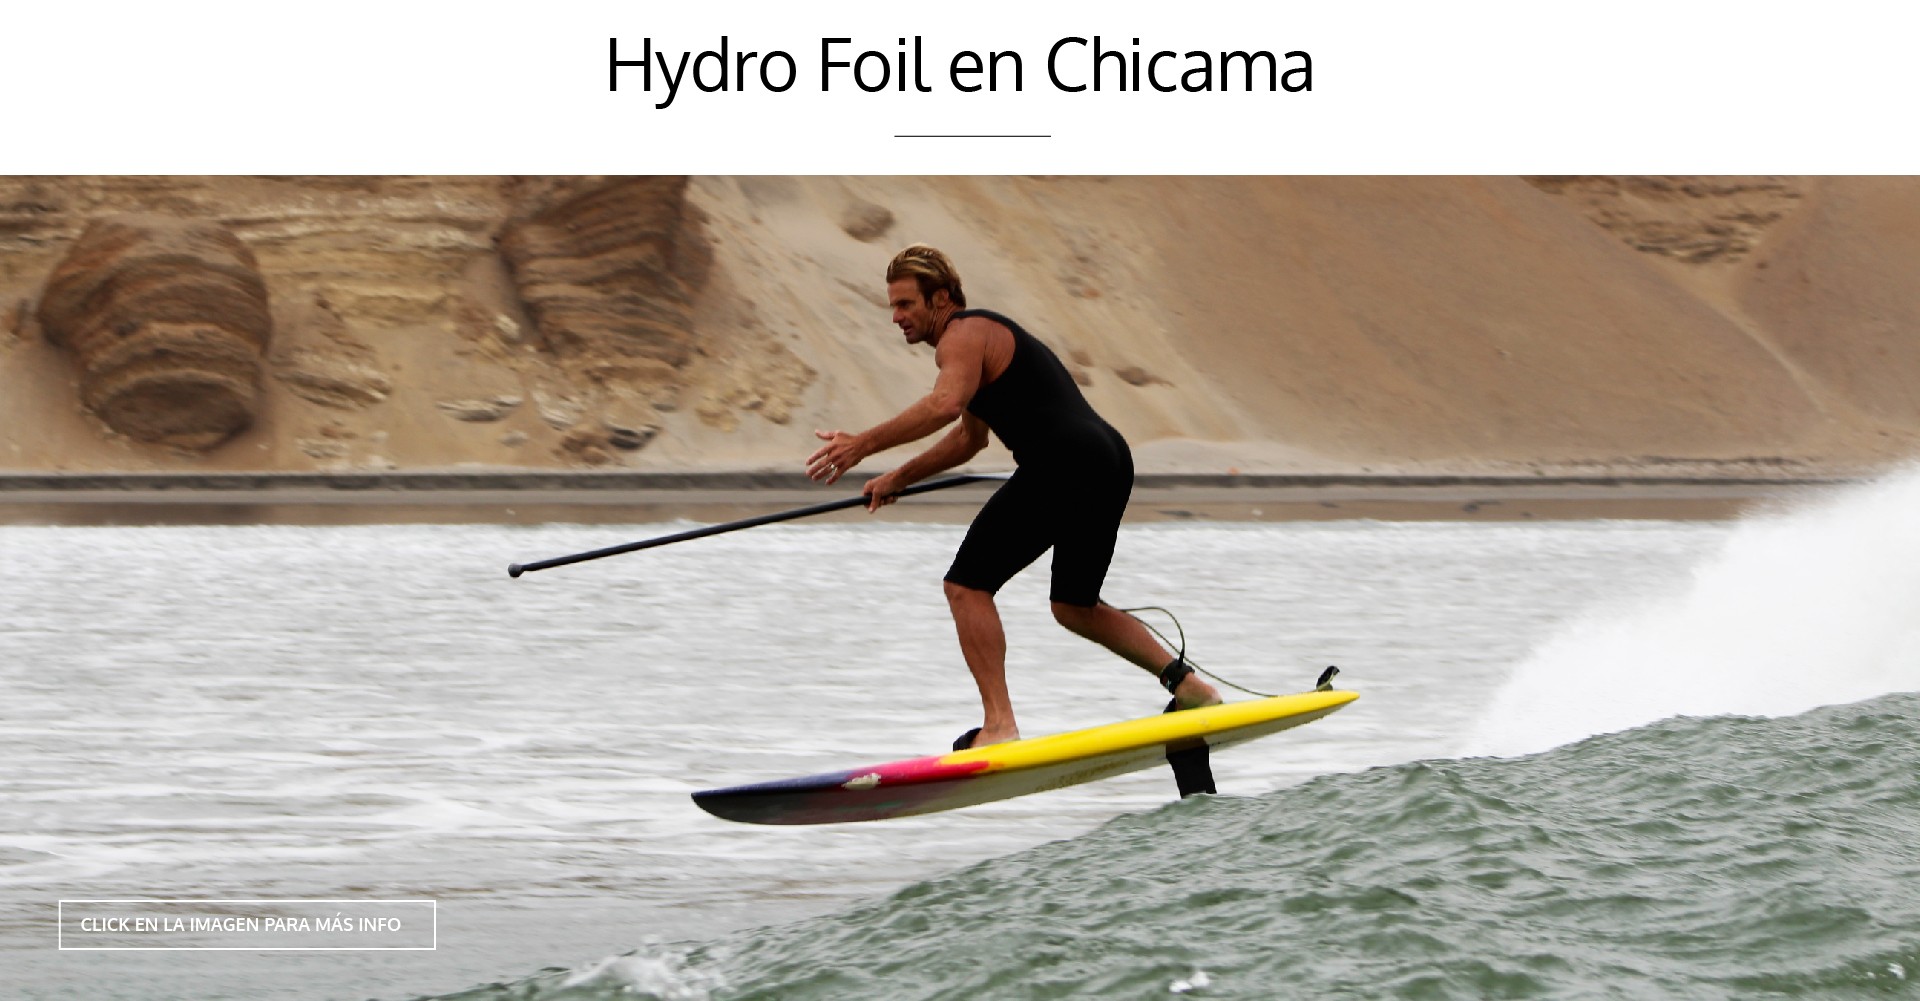 HYDRO FOIL EN CHICAMA